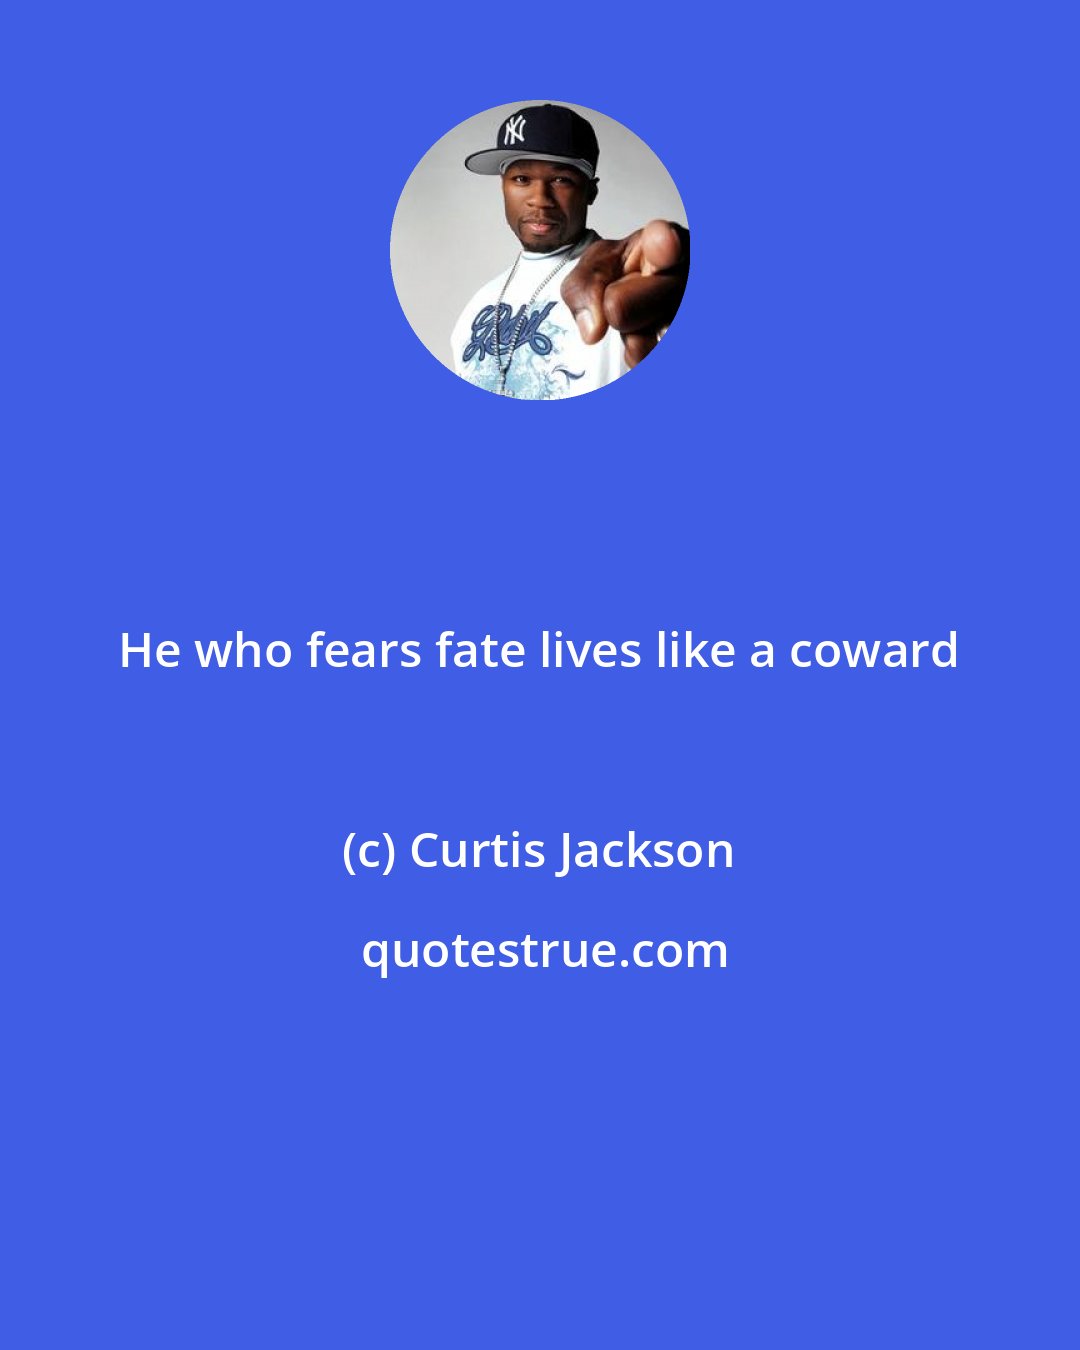 Curtis Jackson: He who fears fate lives like a coward